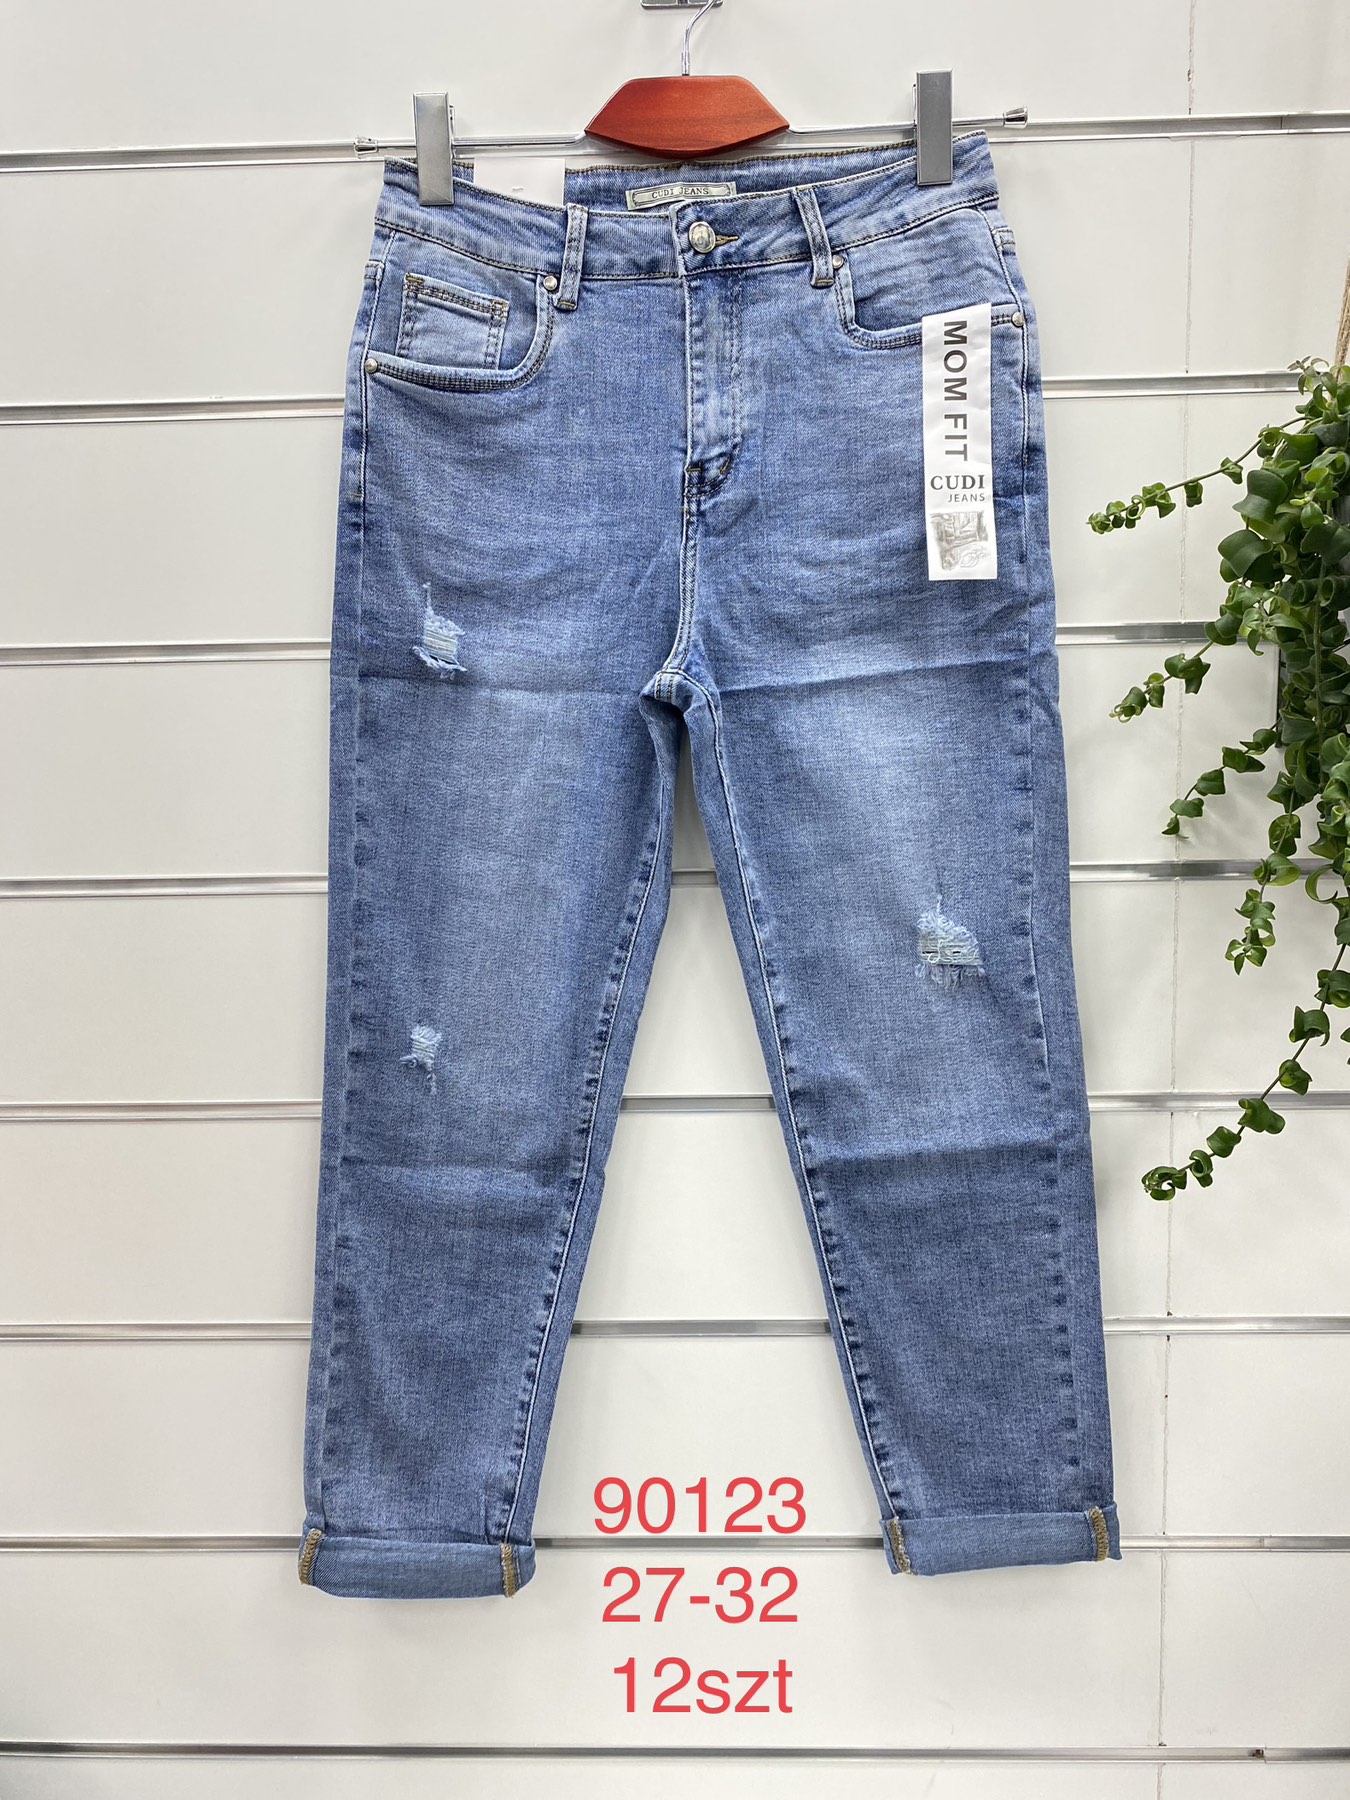 Spodnie damskie jeans Roz  27-32.  1 kolor . Paczka 12szt